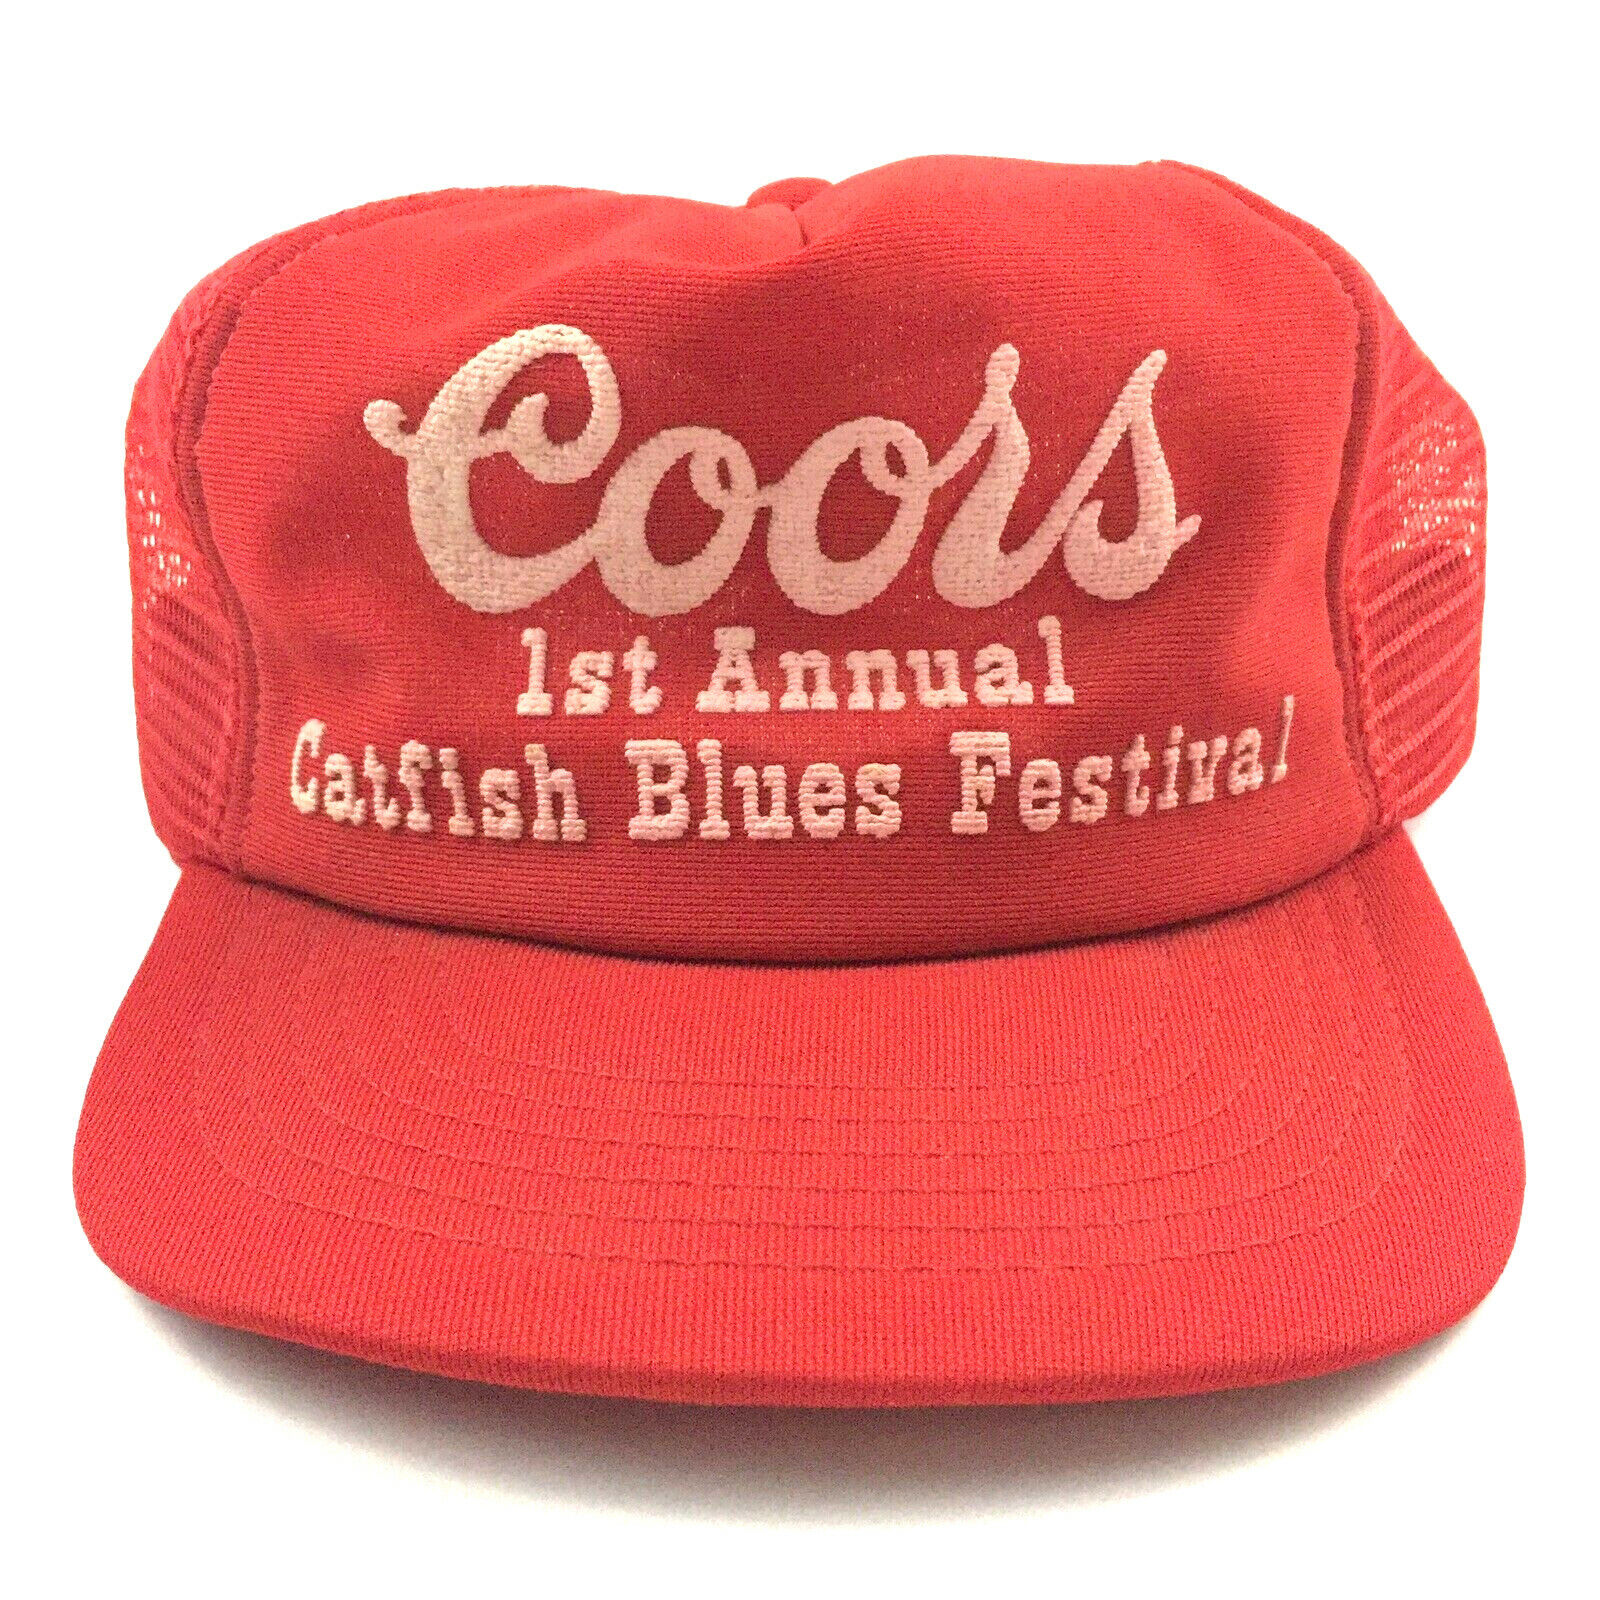 Vtg Coors Catfish Blues Festival Cap Beer Mesh Snap Back Trucker Baseball Hat